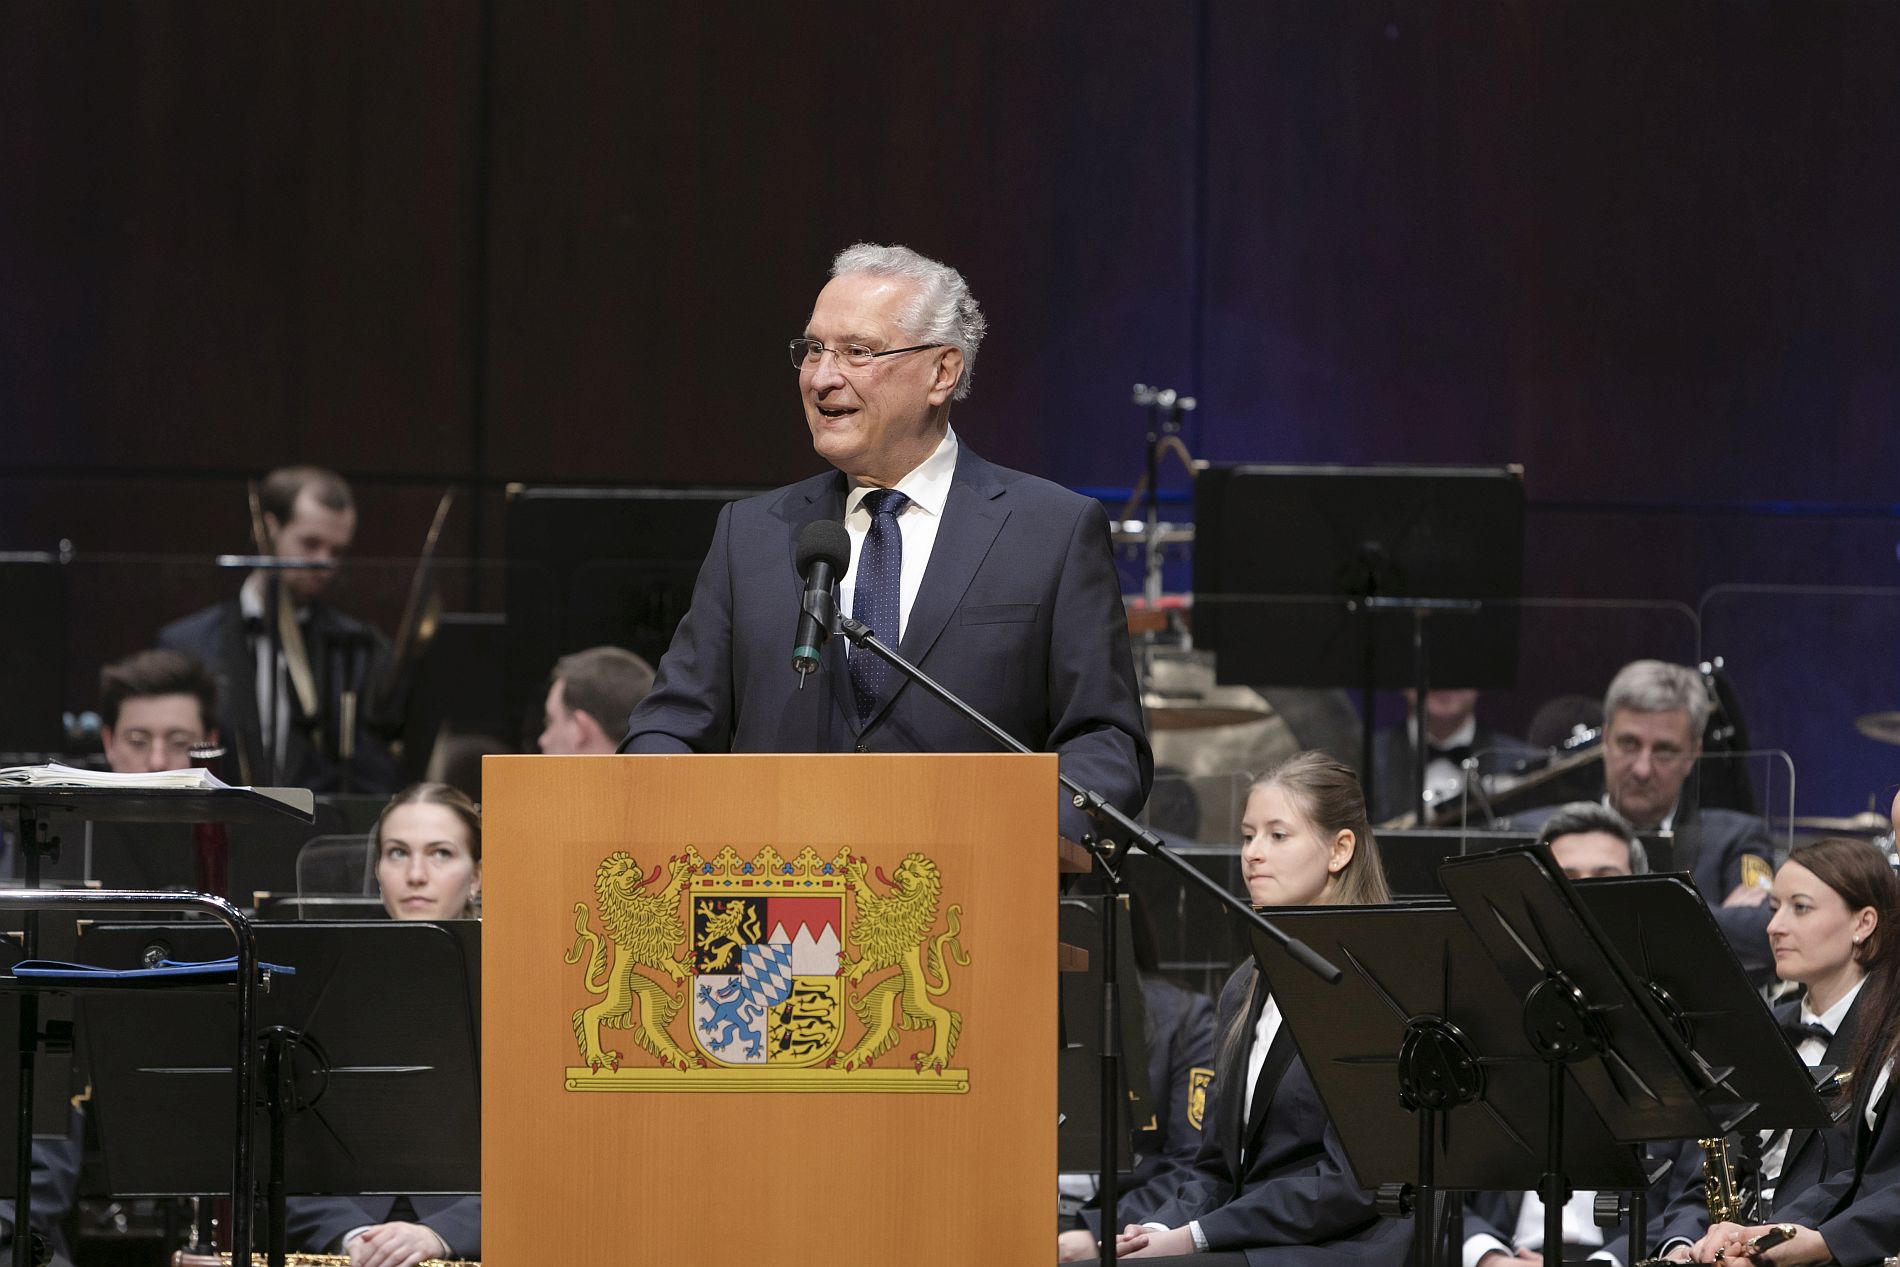 Herrmann begeistert vom Spendenerfolg beim Benefizkonzert des Polizeiorchesters Bayern